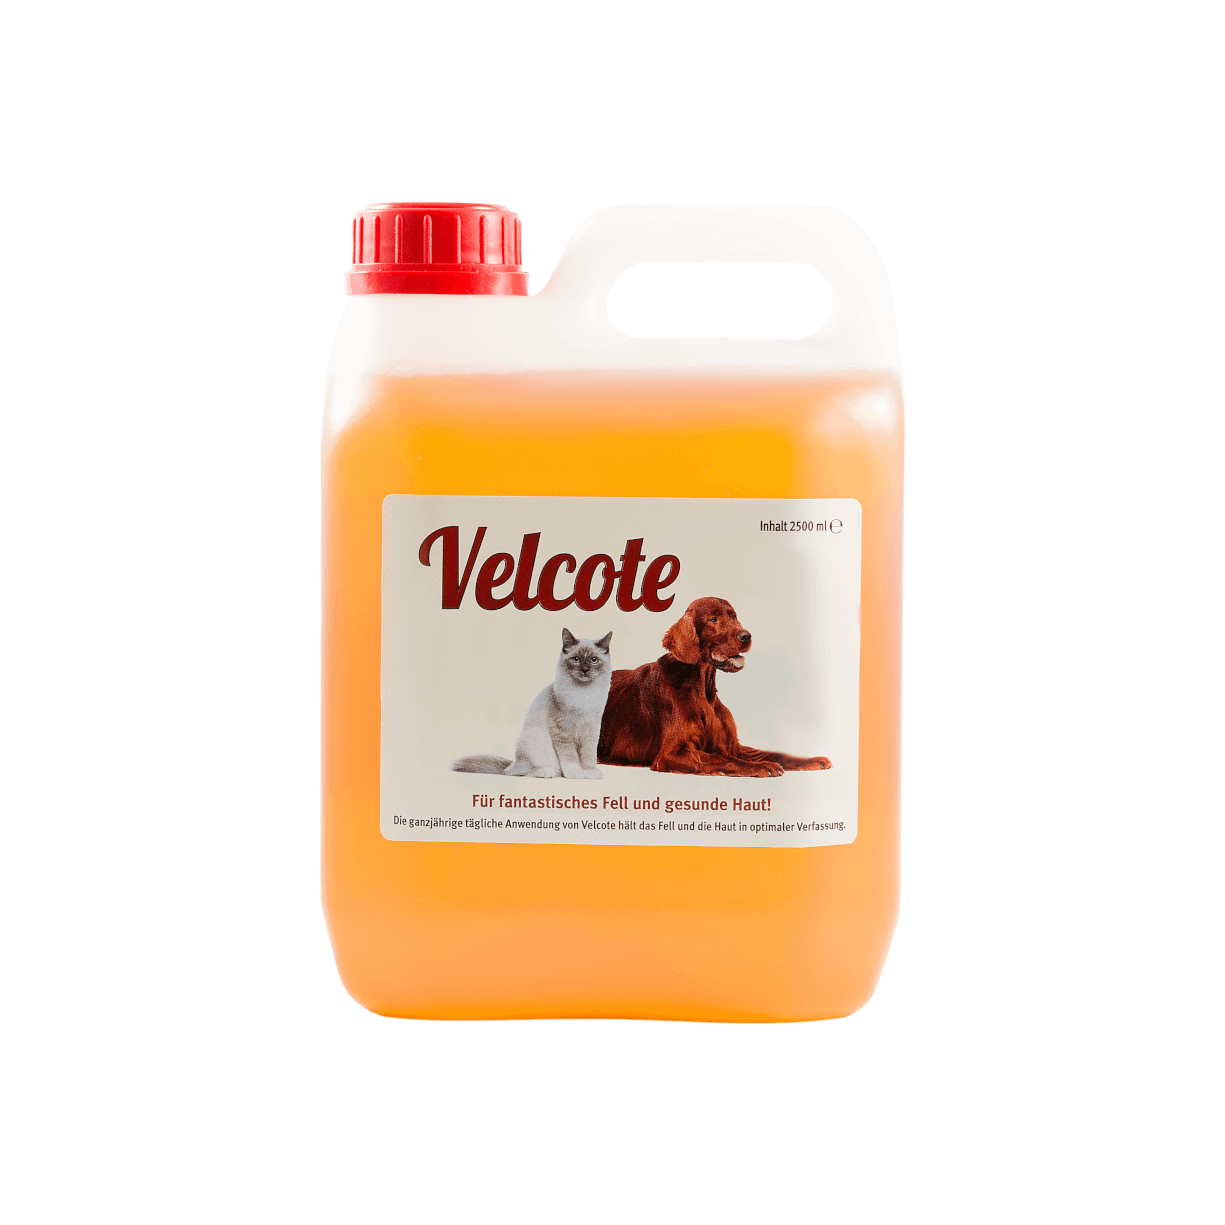 Velcote ist ein kaltgepresstes Nuss-, Weizenkeim- und Leinsamenöl mit einem guten Verhältnis von Omega-3- und Omega-6-Fettsäuren